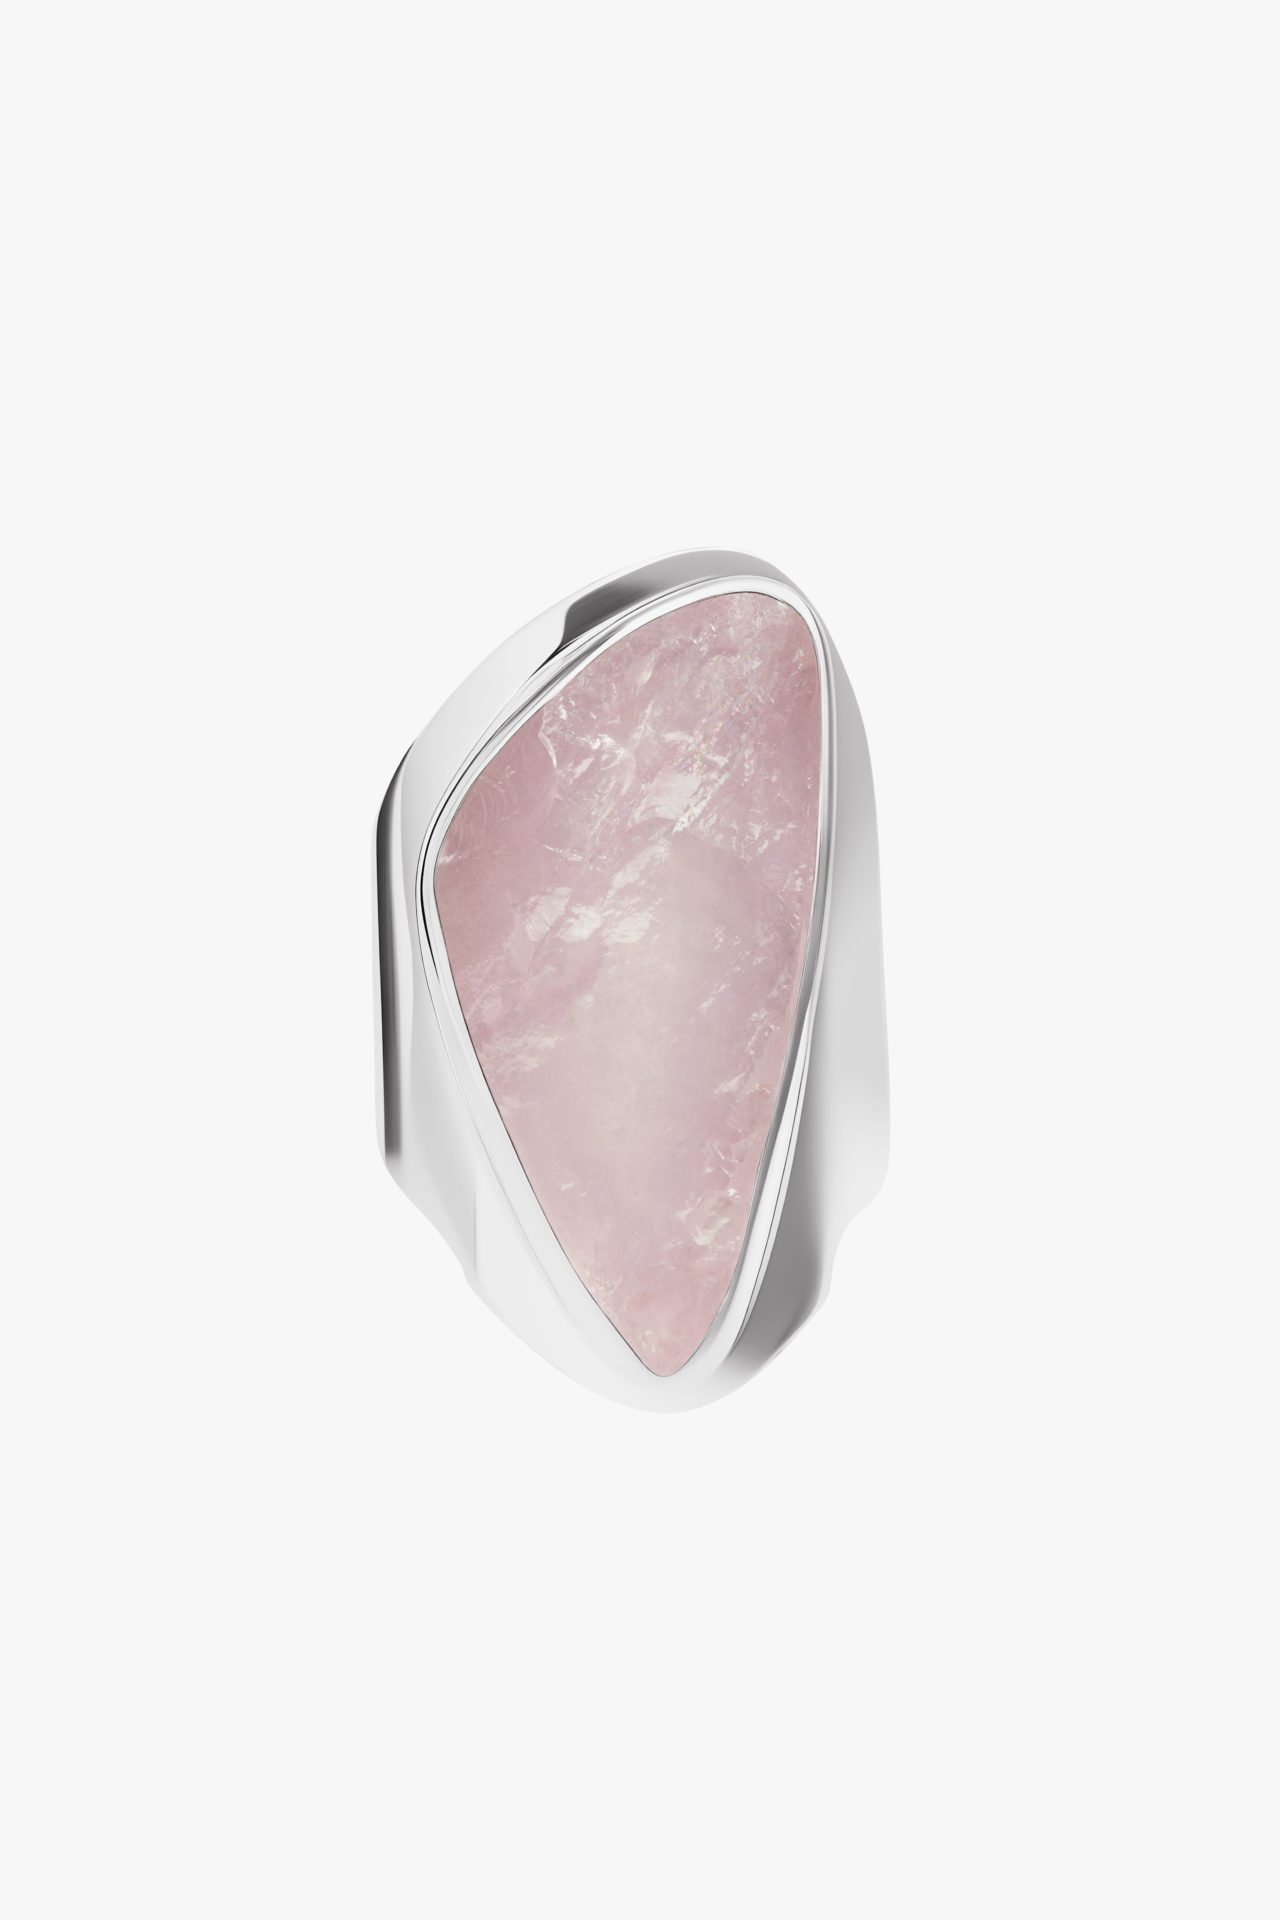 Женский перстень широкий с диким розовым кварцем серебро — купить вмагазине BOHOANN 💍 Современное ювелирное искусство